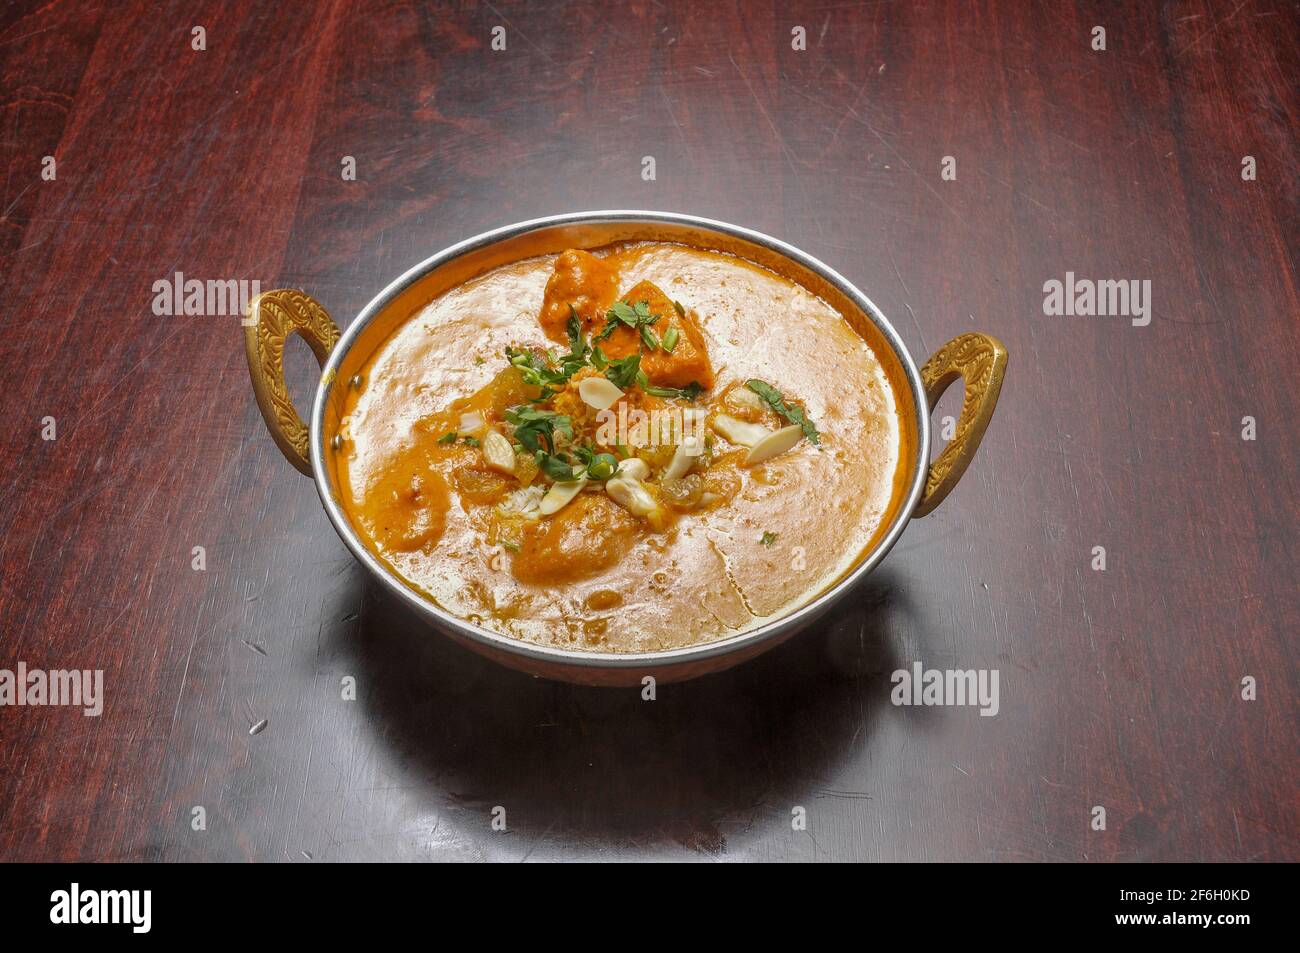 Authentische und traditionelle indische Küche Gericht bekannt als Korma Stockfoto